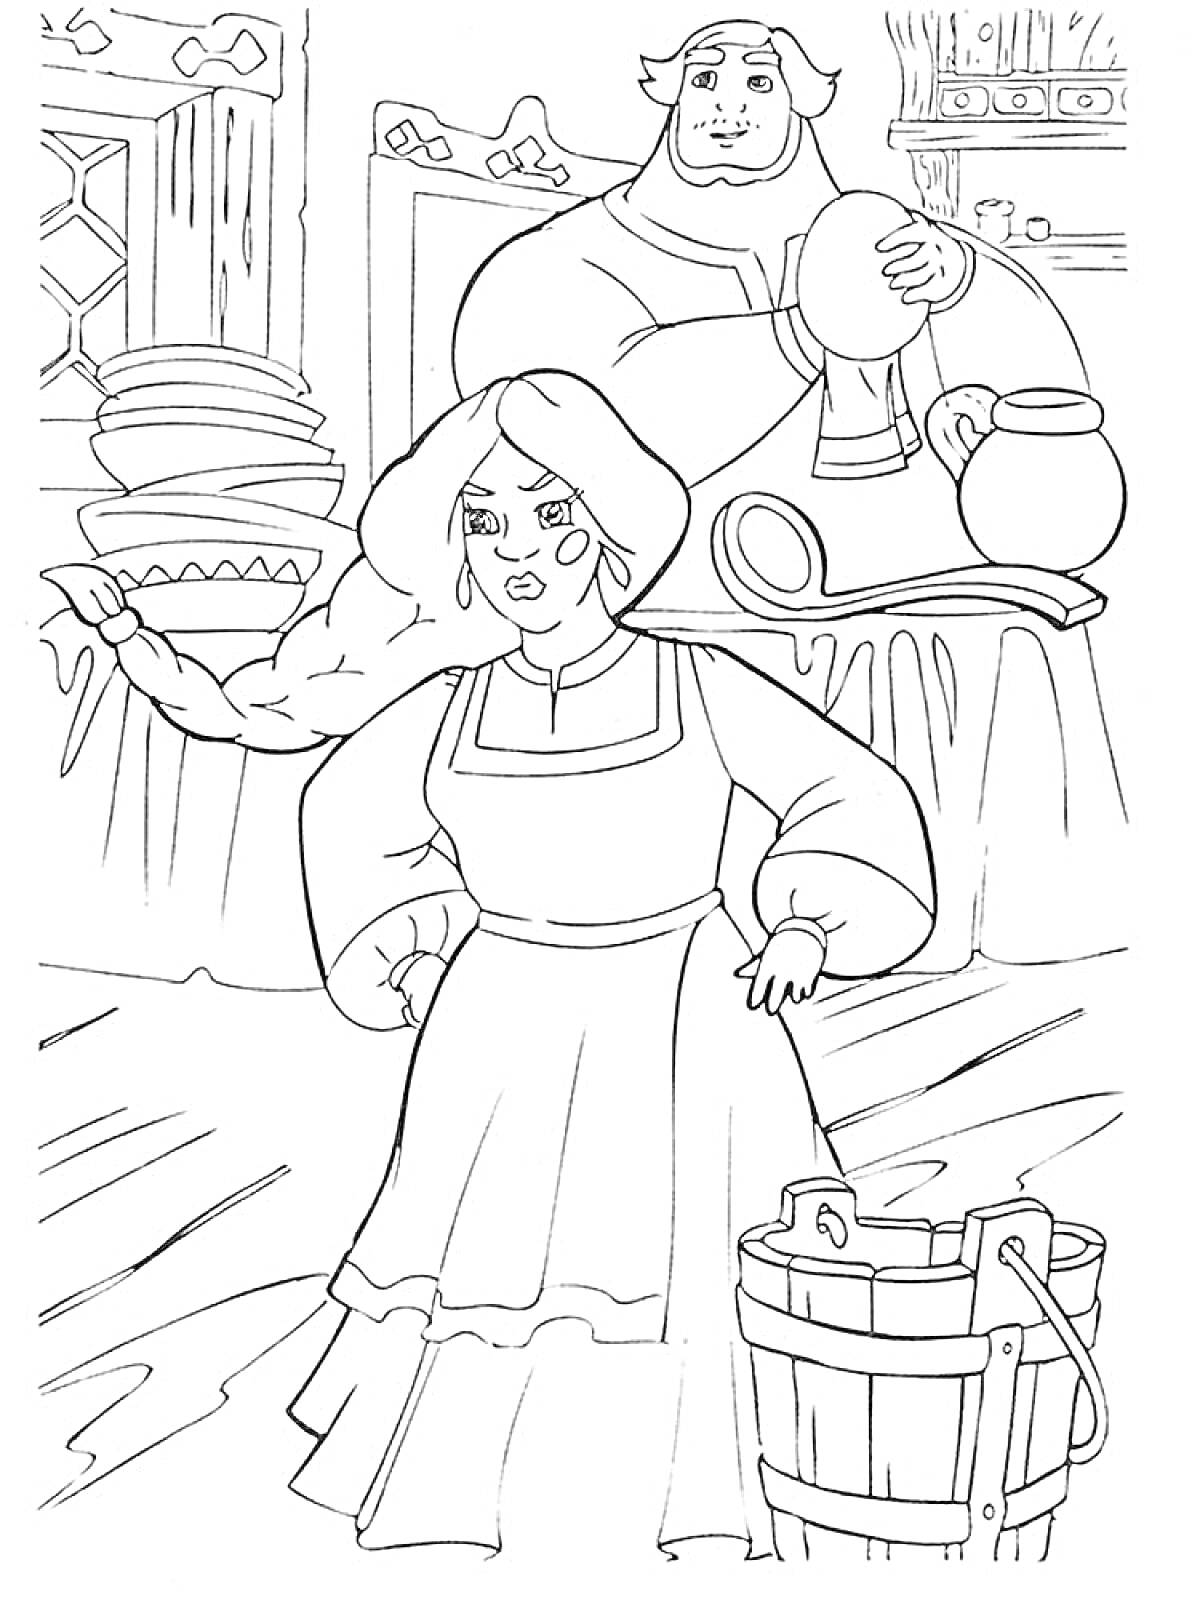 Раскраска Великий богатырь и женщина в крестьянской одежде на кухне с посудой и ведром